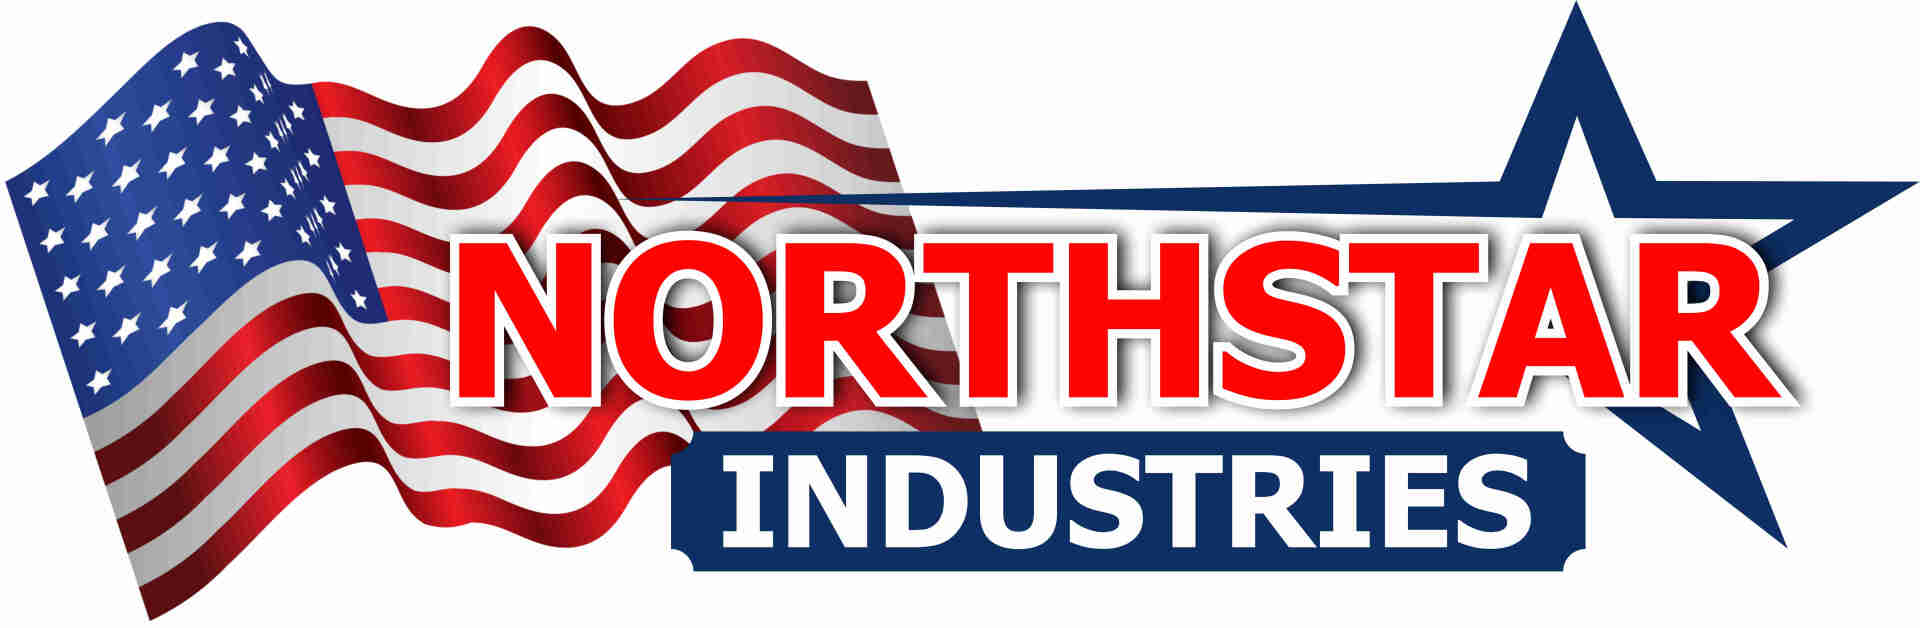 Northstar Industries